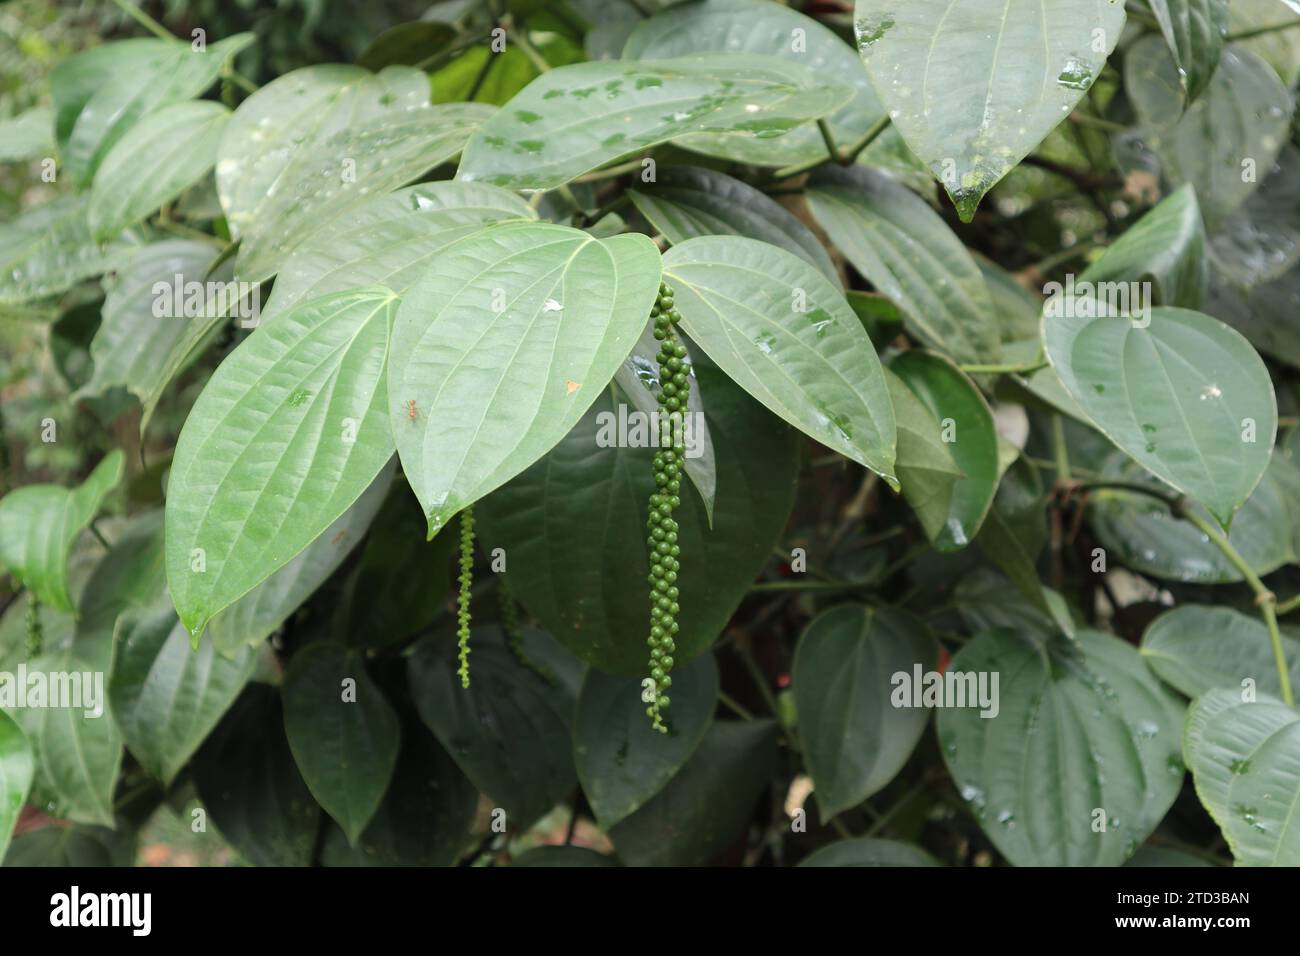 Ein grüner Pfefferkornspike, der von einer schwarzen Pfefferrebe (Piper nigrum) hängt. Diese wachsende grüne Frucht mit Pfefferspitze hängt Stockfoto